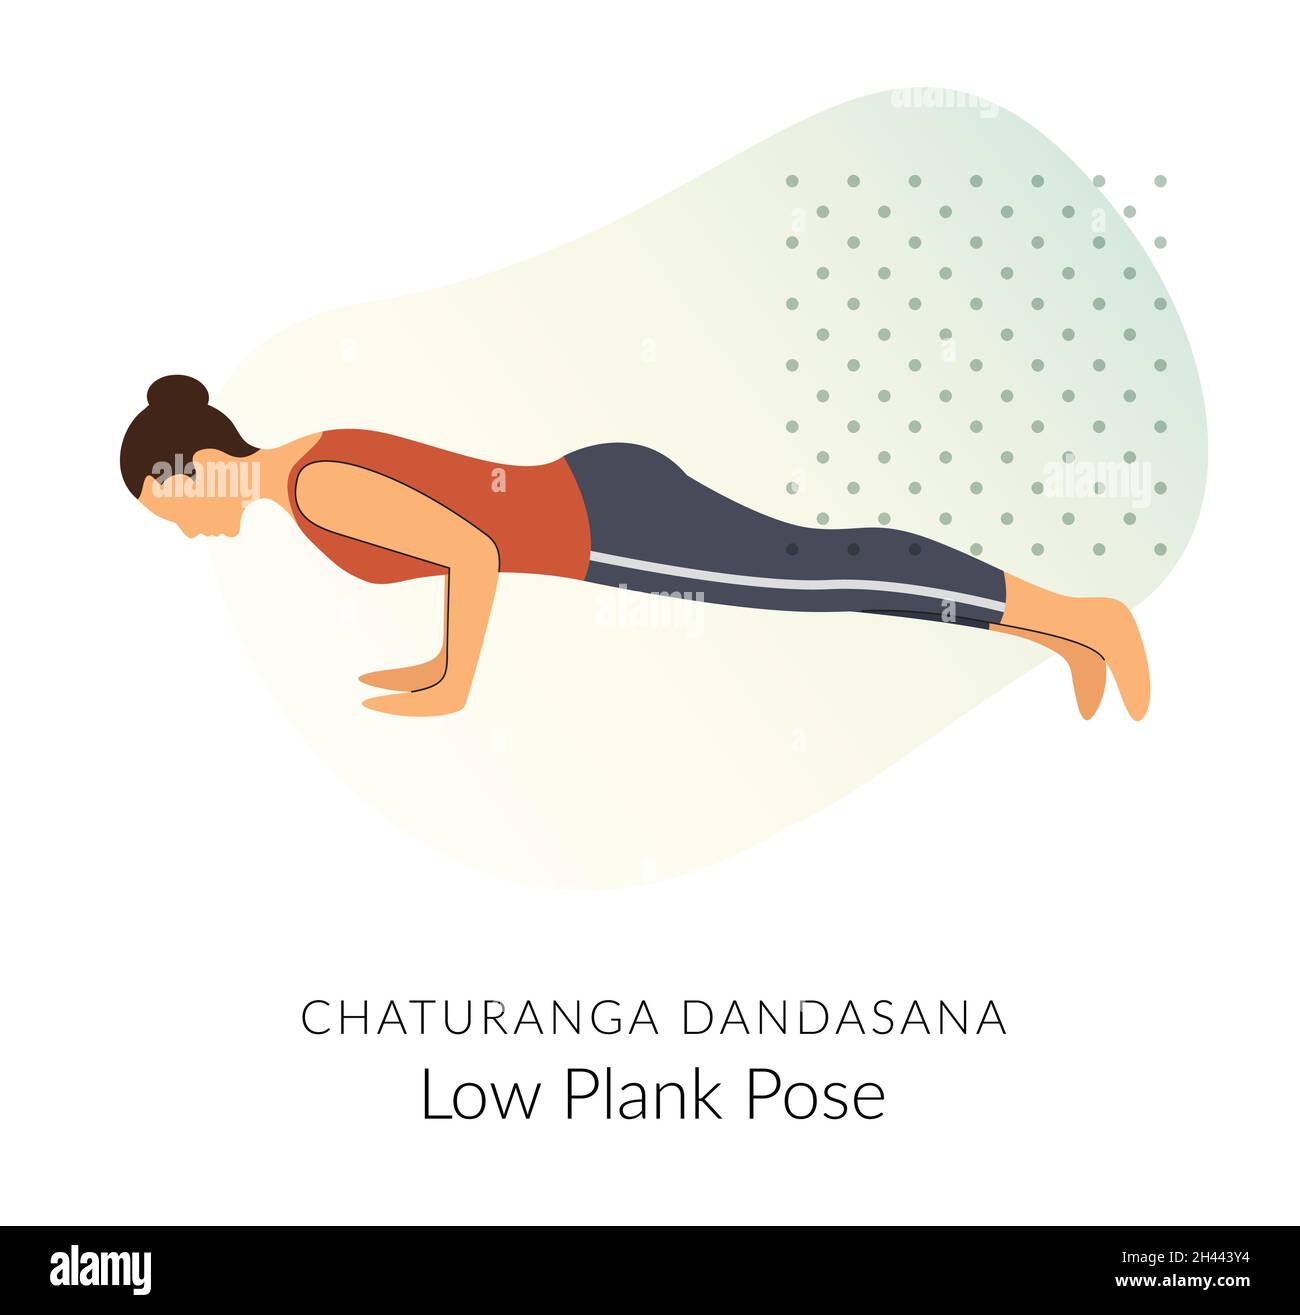 Low Plank Pose  Chaturanga Dandasana